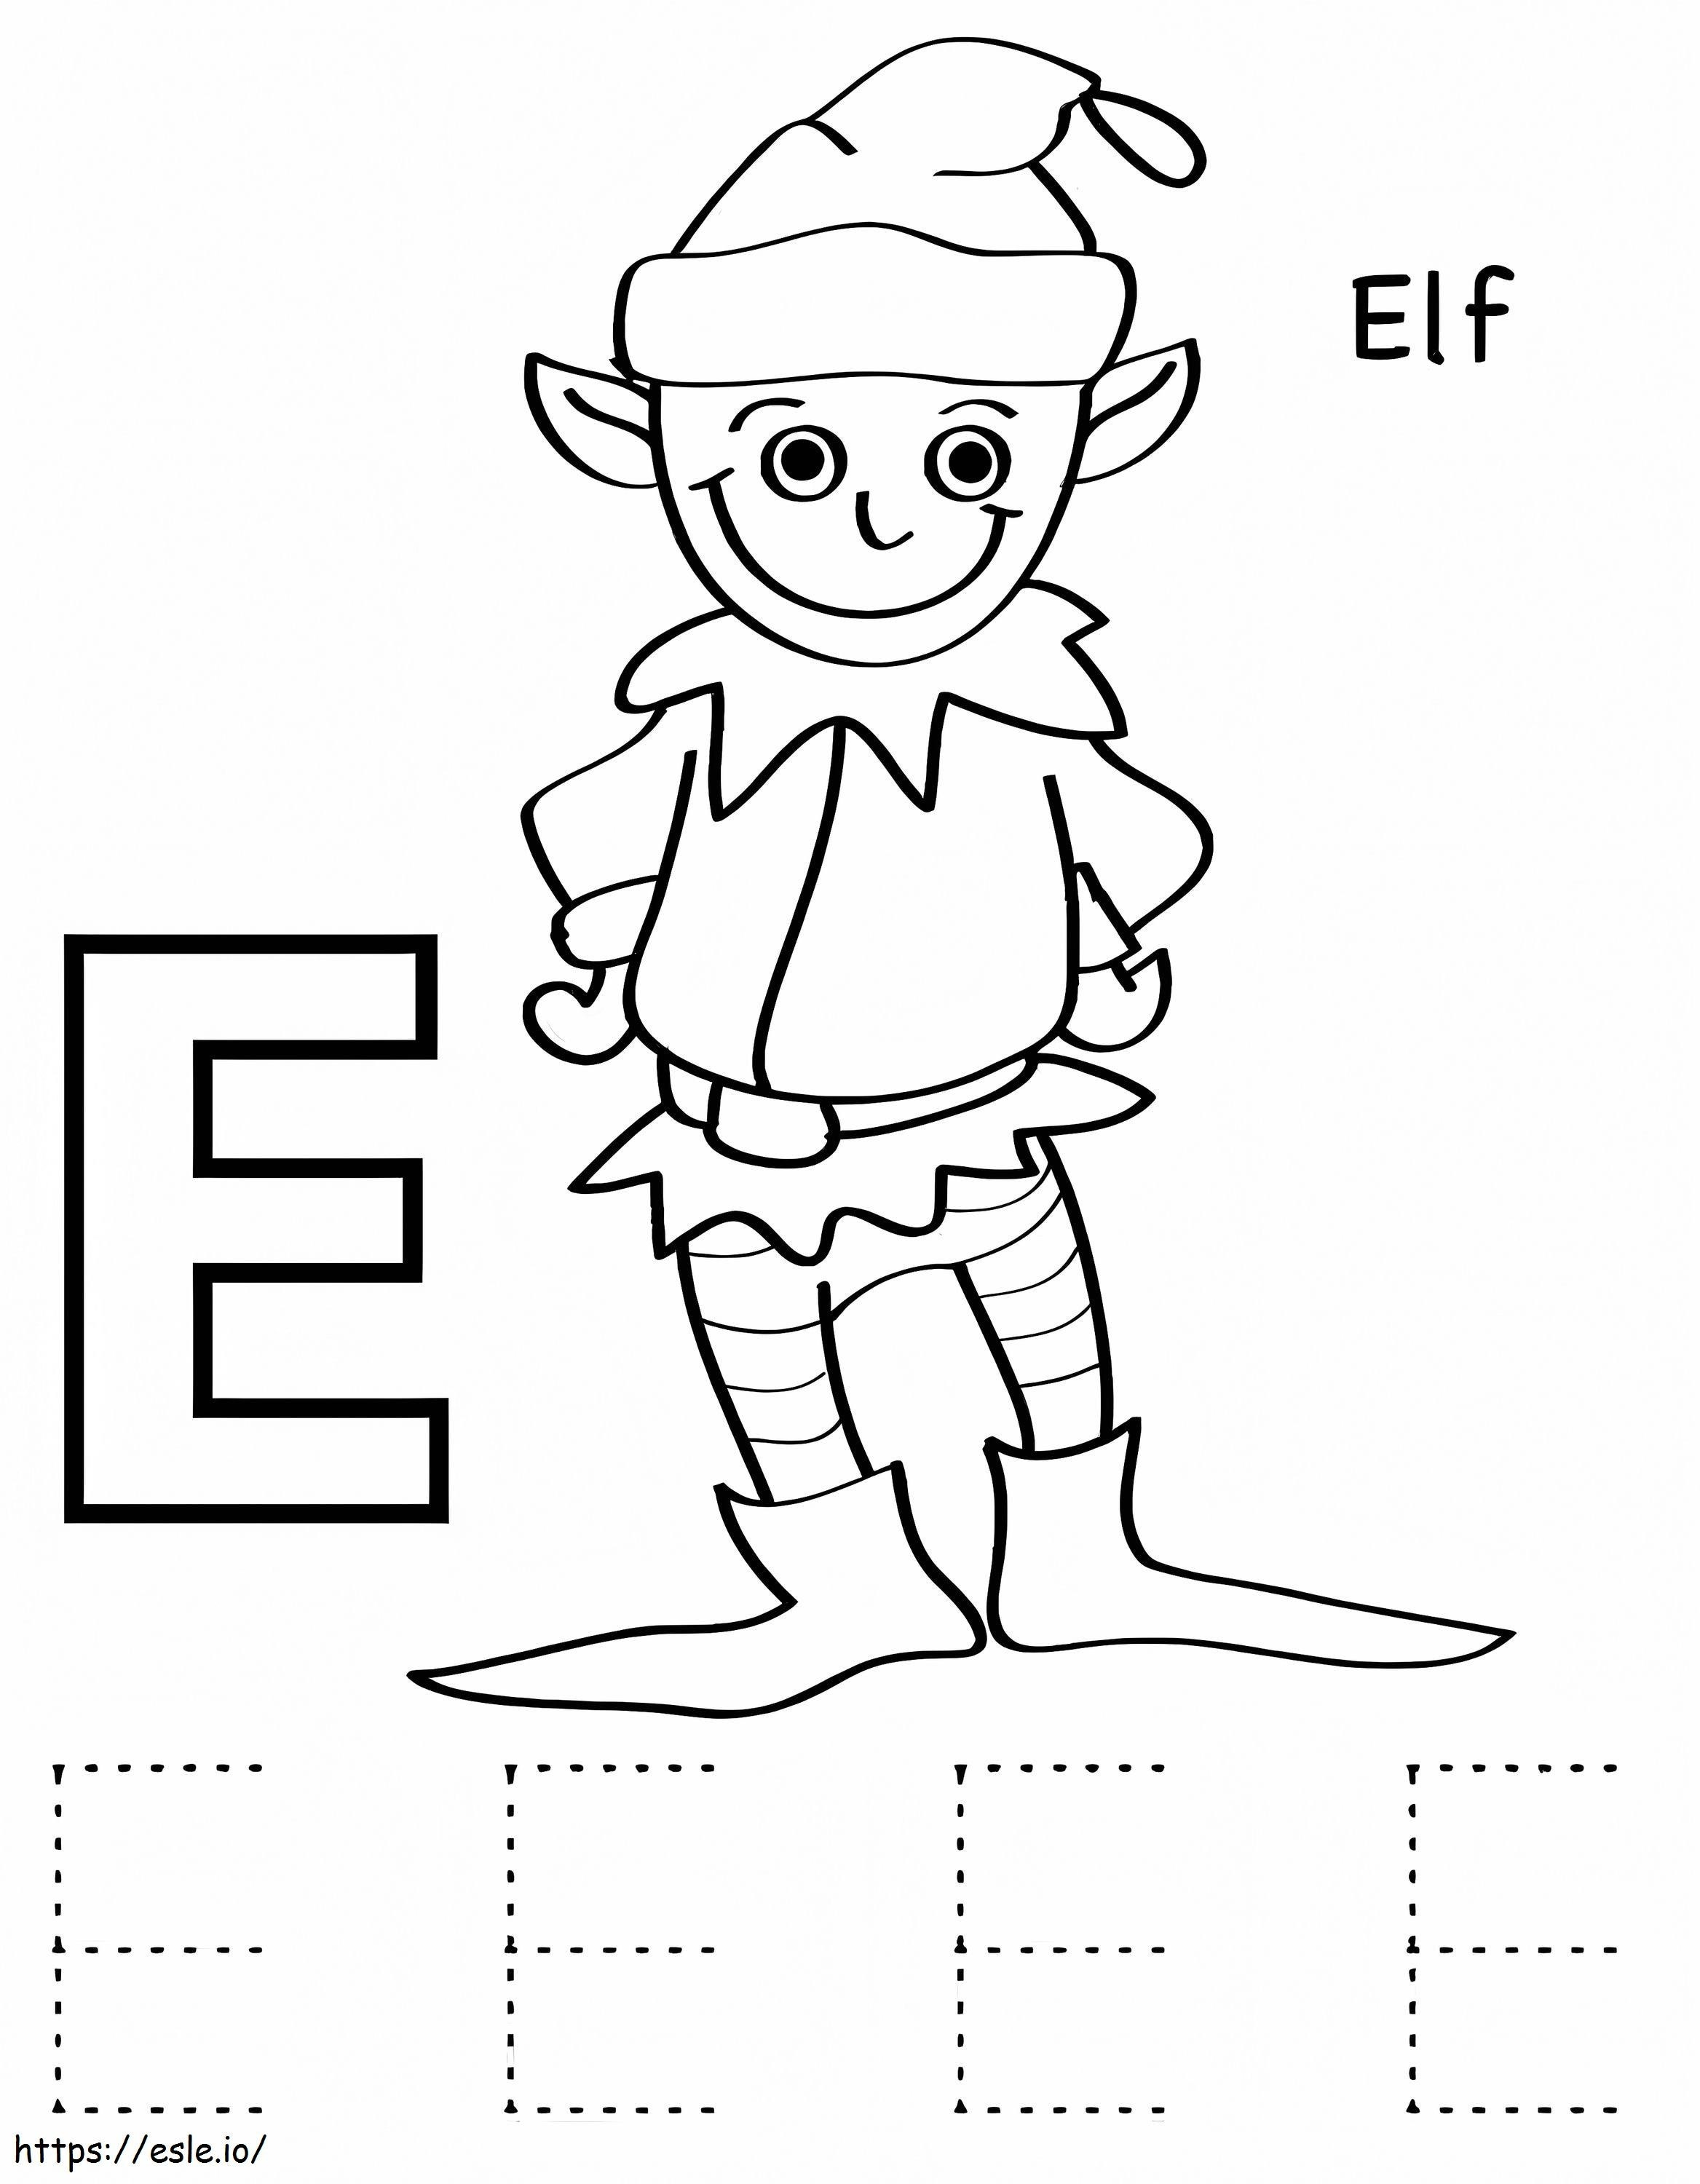 Elf Letter E kleurplaat kleurplaat